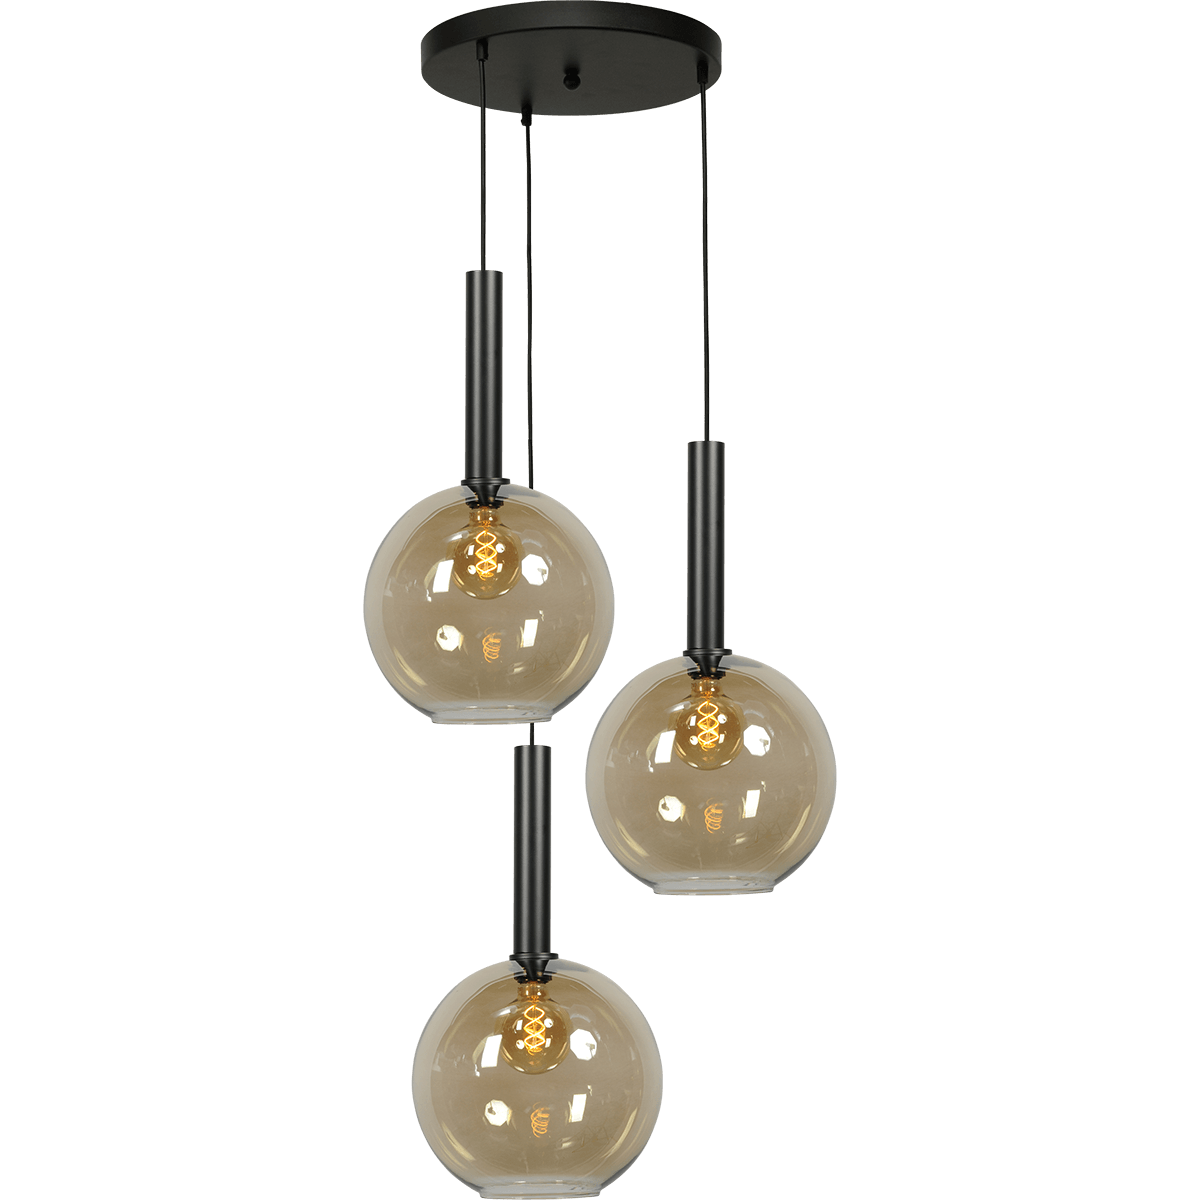 Hanglamp Bella -  3-lichts mat zwart Ø35cm - zwarte pvc kabel 150cm + glas 3x 62260-05-20-30 -  - MASTERLIGHT